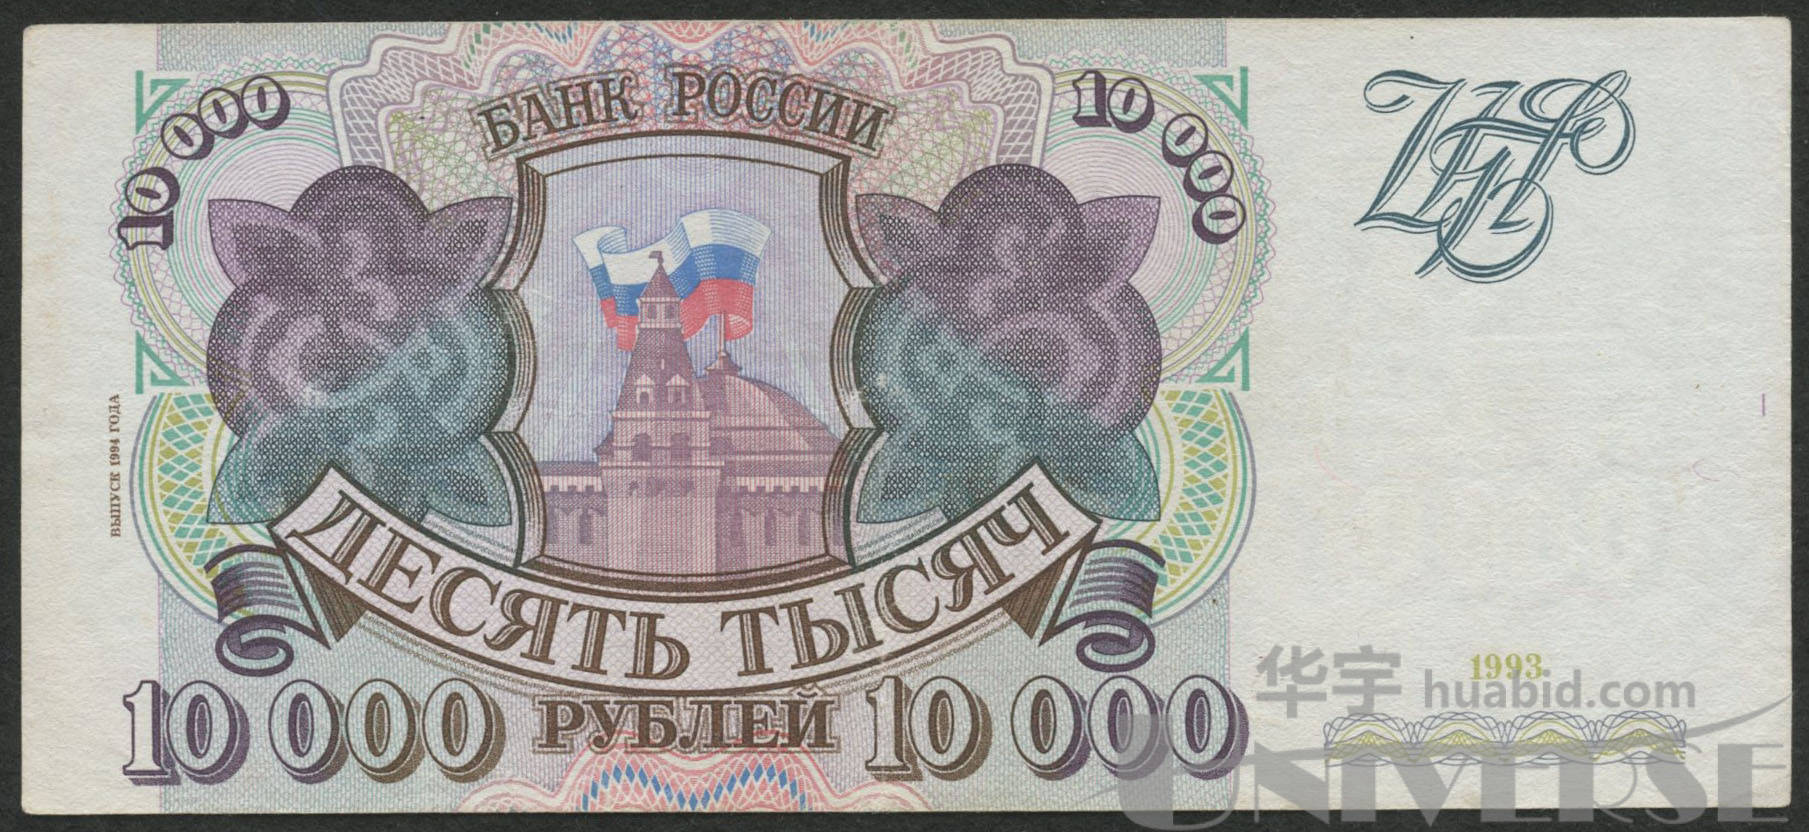 1993年俄罗斯10000卢布一枚